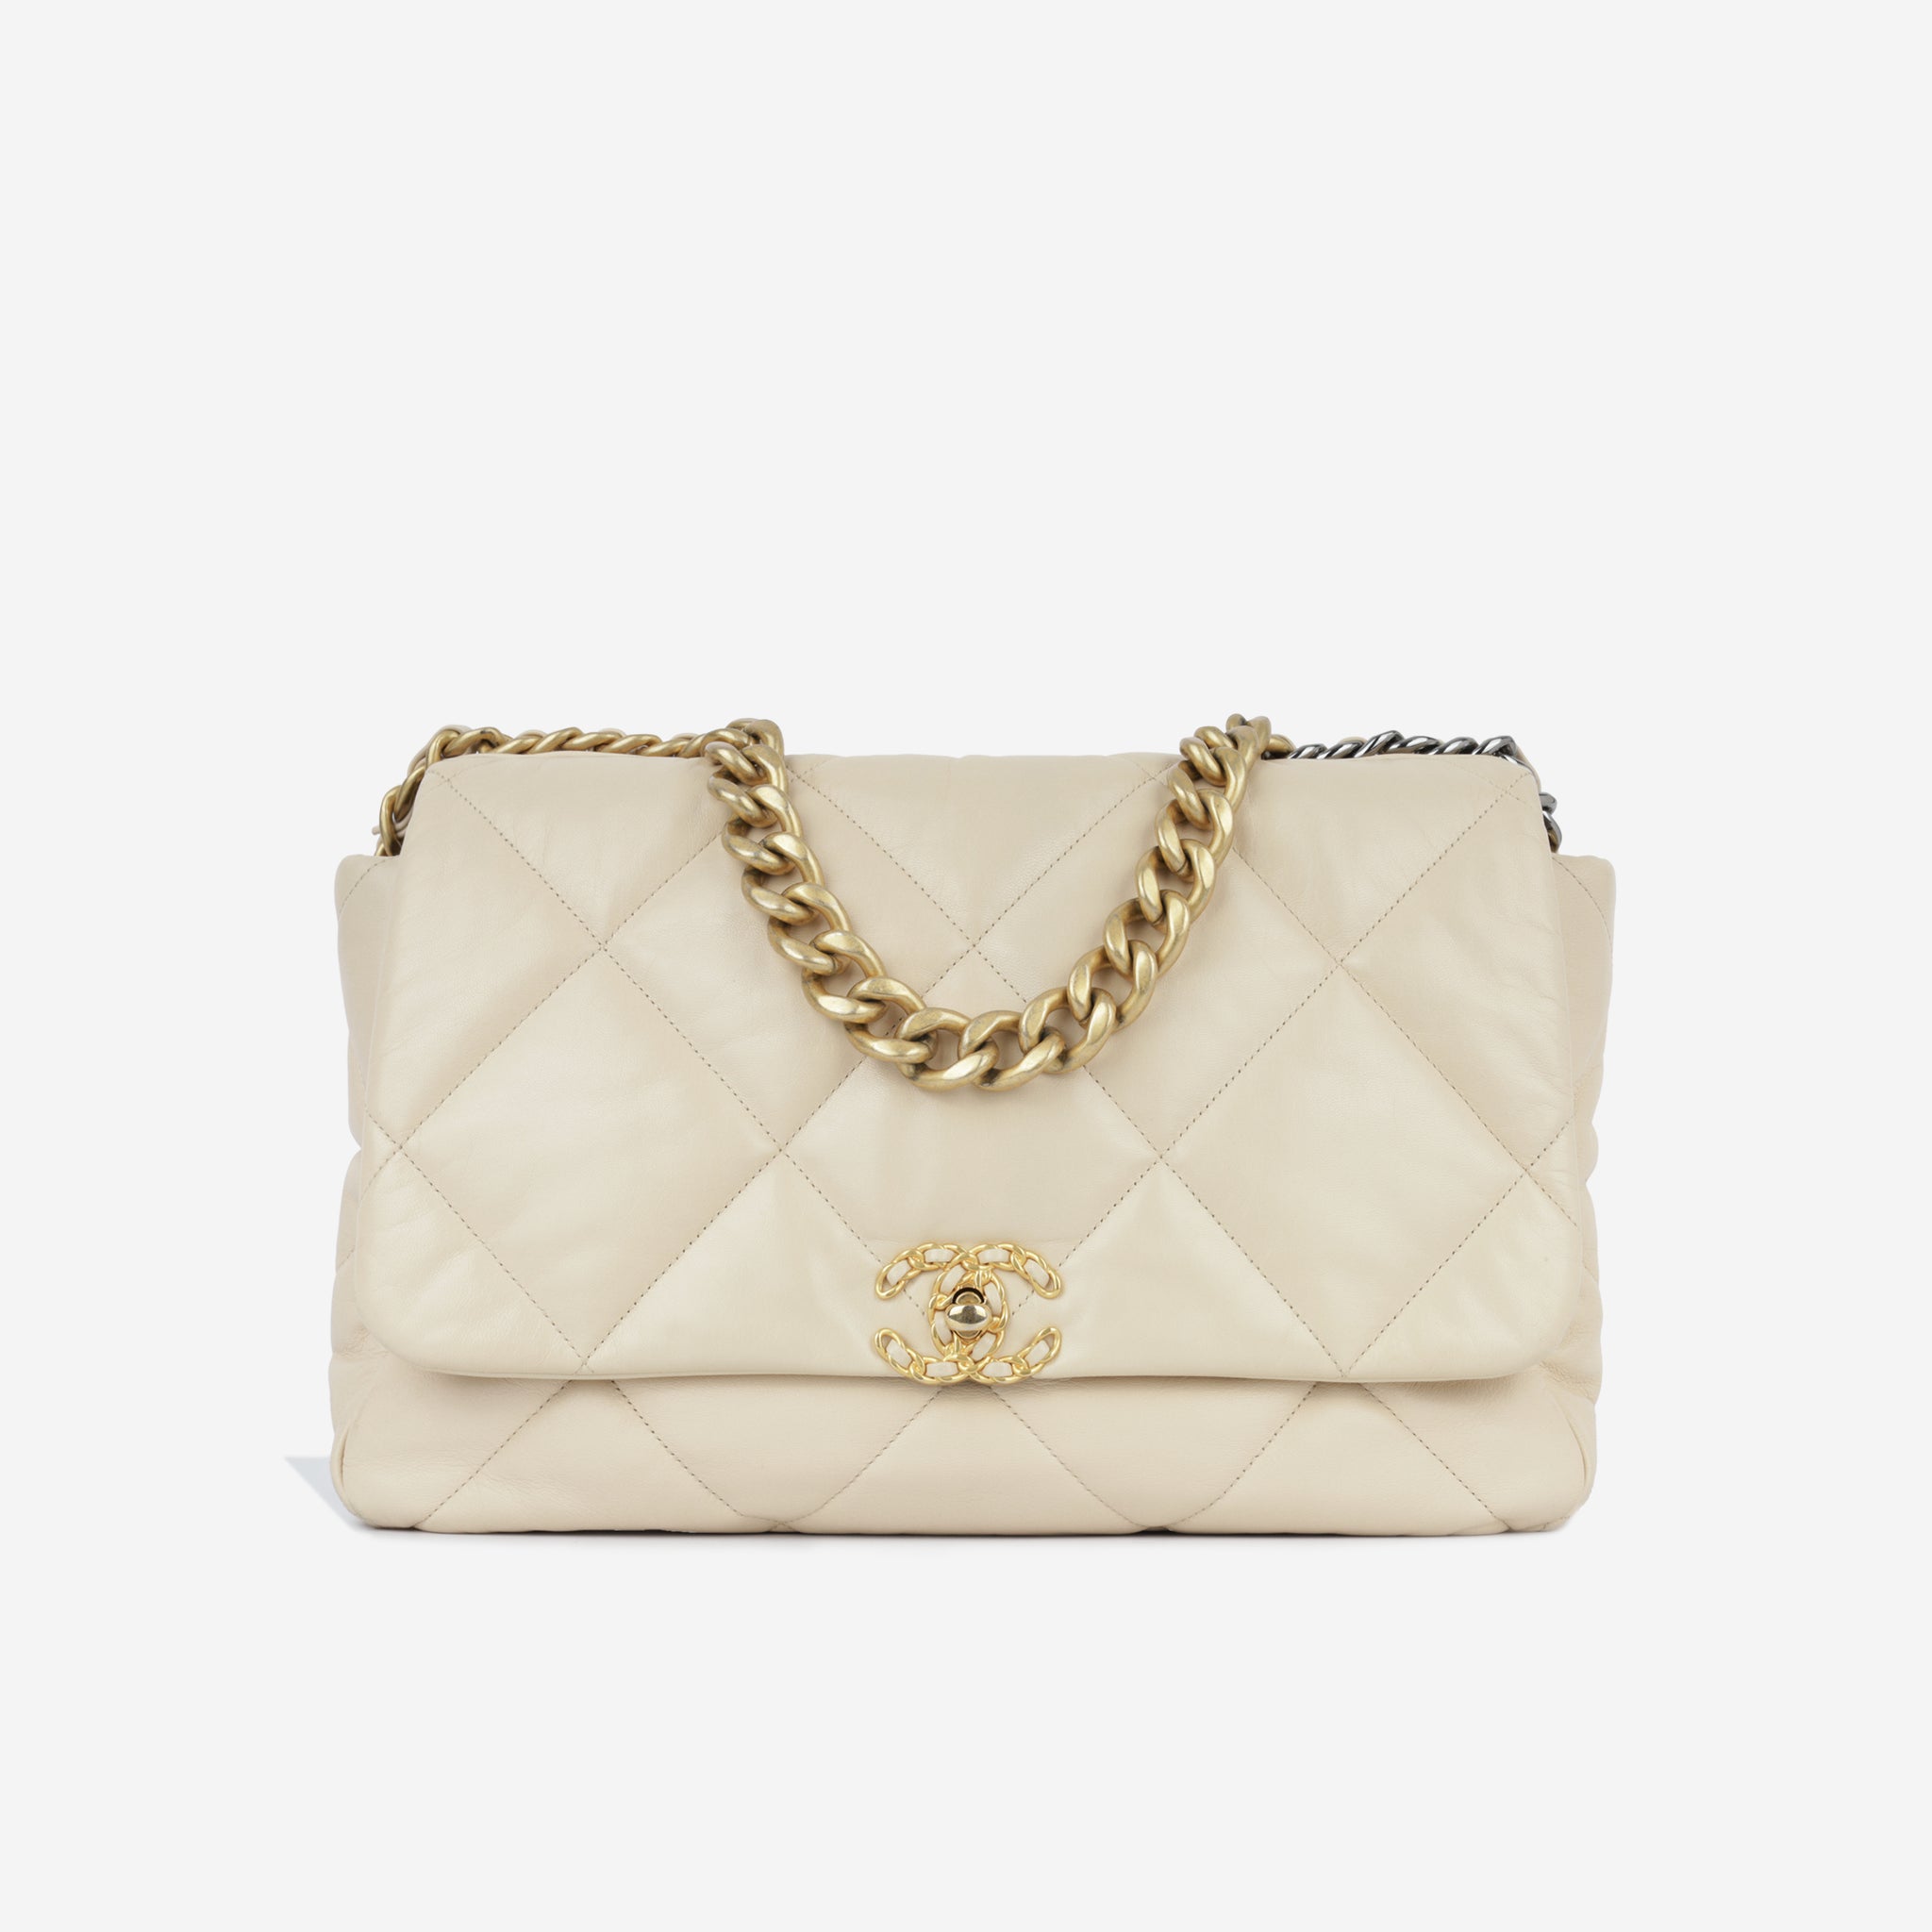 Chanel - 19 Flap Bag - Maxi - Beige Lambskin - Pre-Loved - 2020